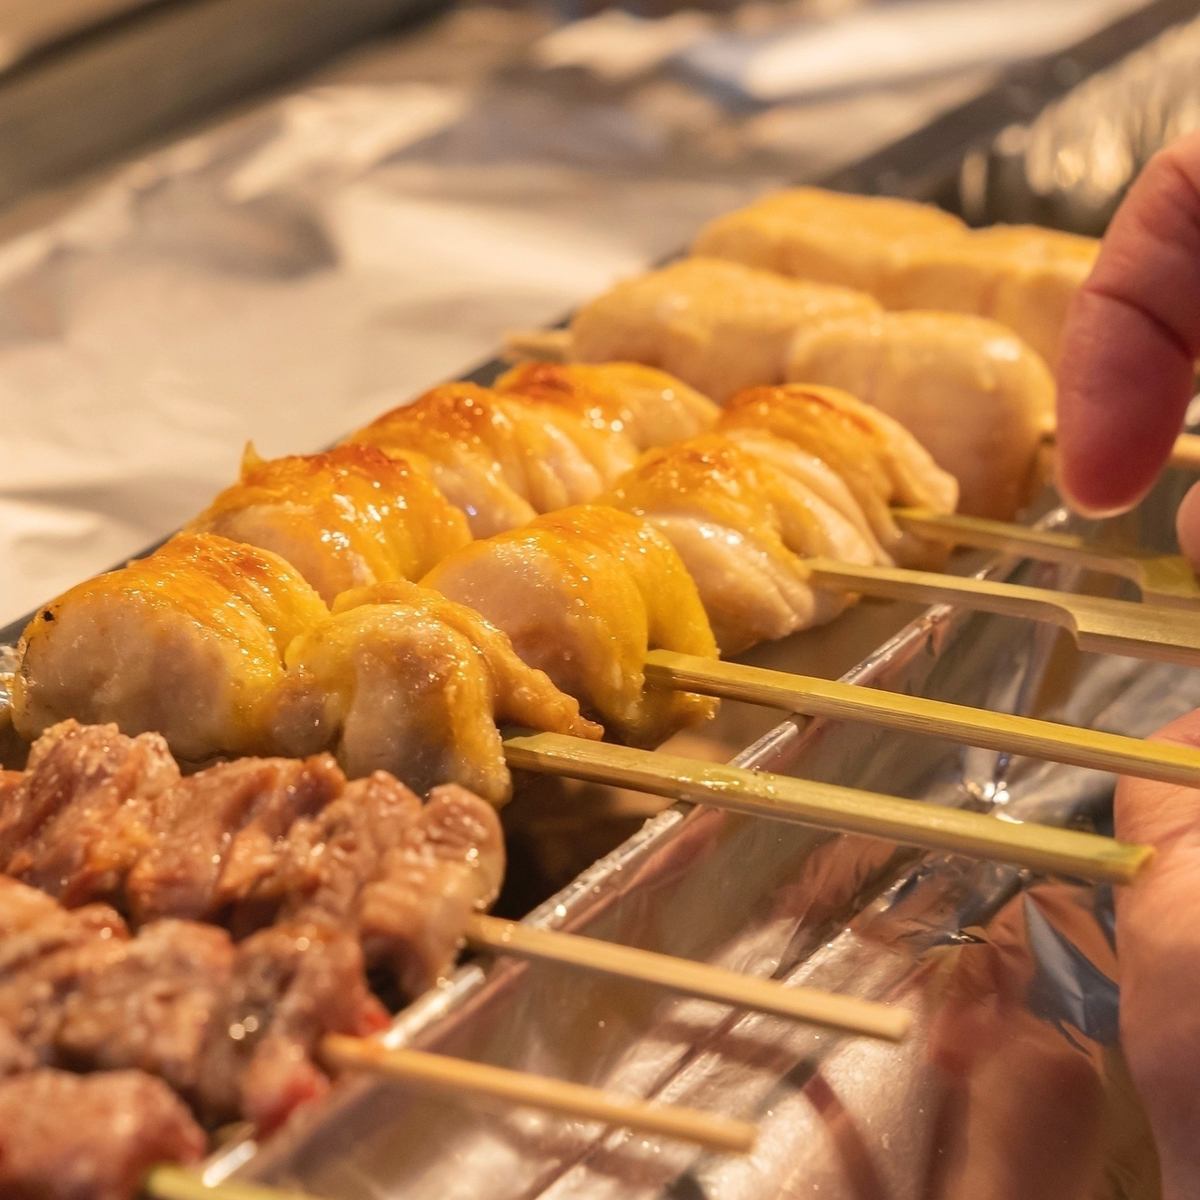 请享用用纪州备长炭烤制的特制烤鸡肉串。